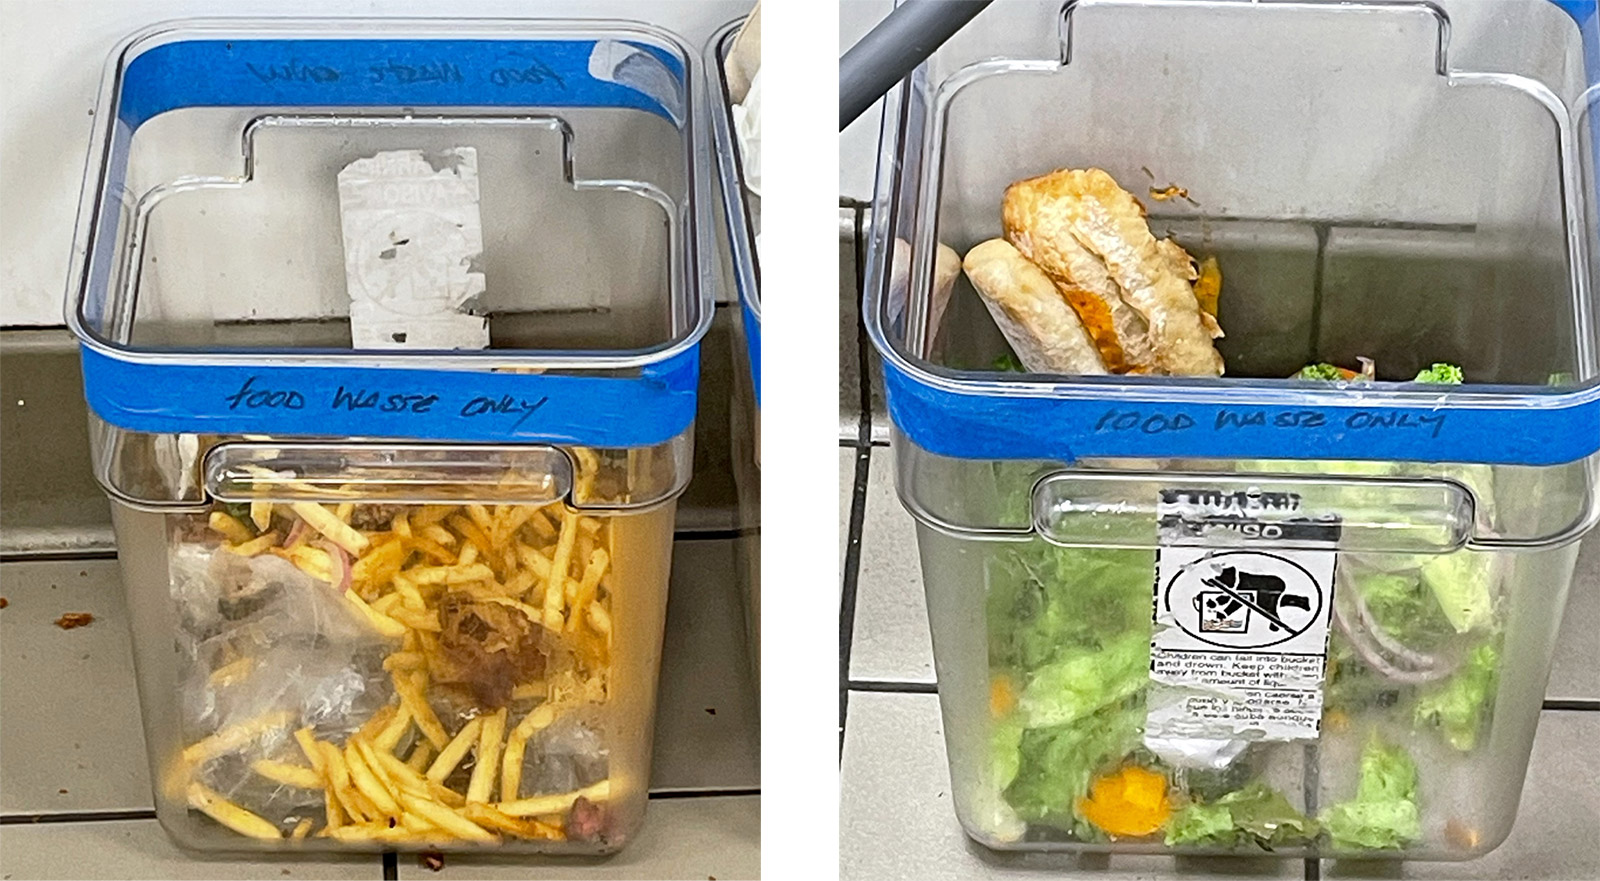 Food waste bins